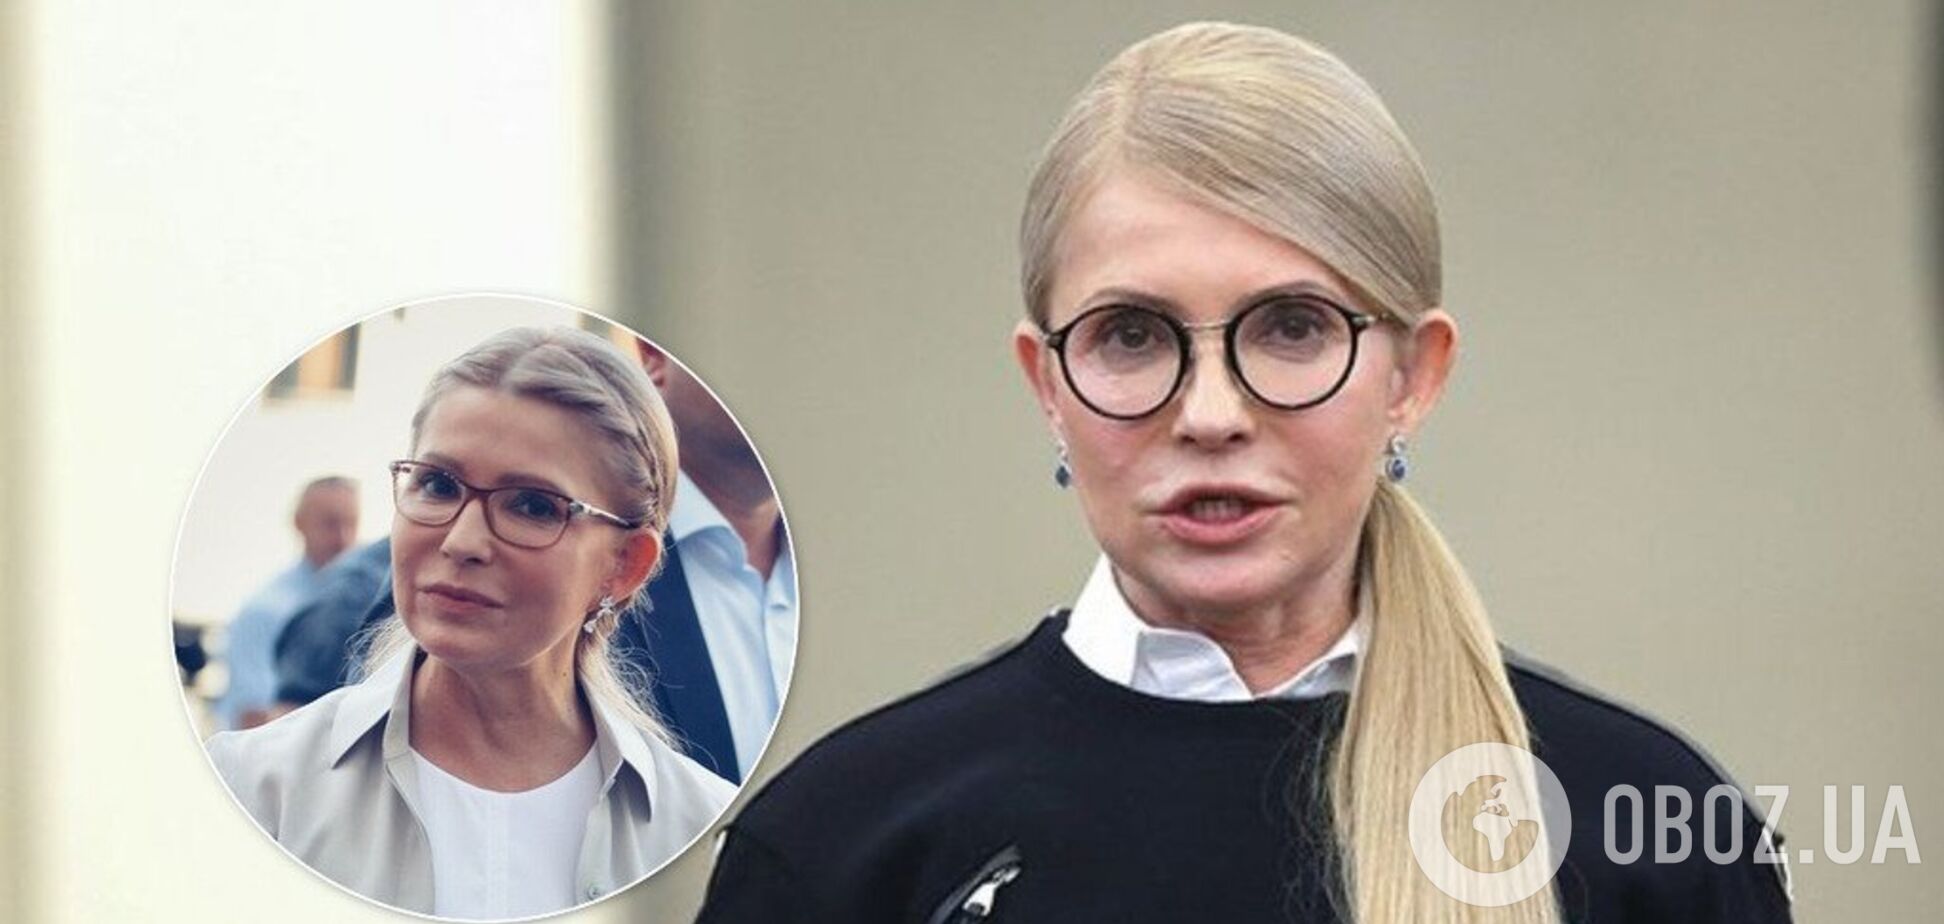 Тимошенко пришла в Раду с новой прической: фото до и после